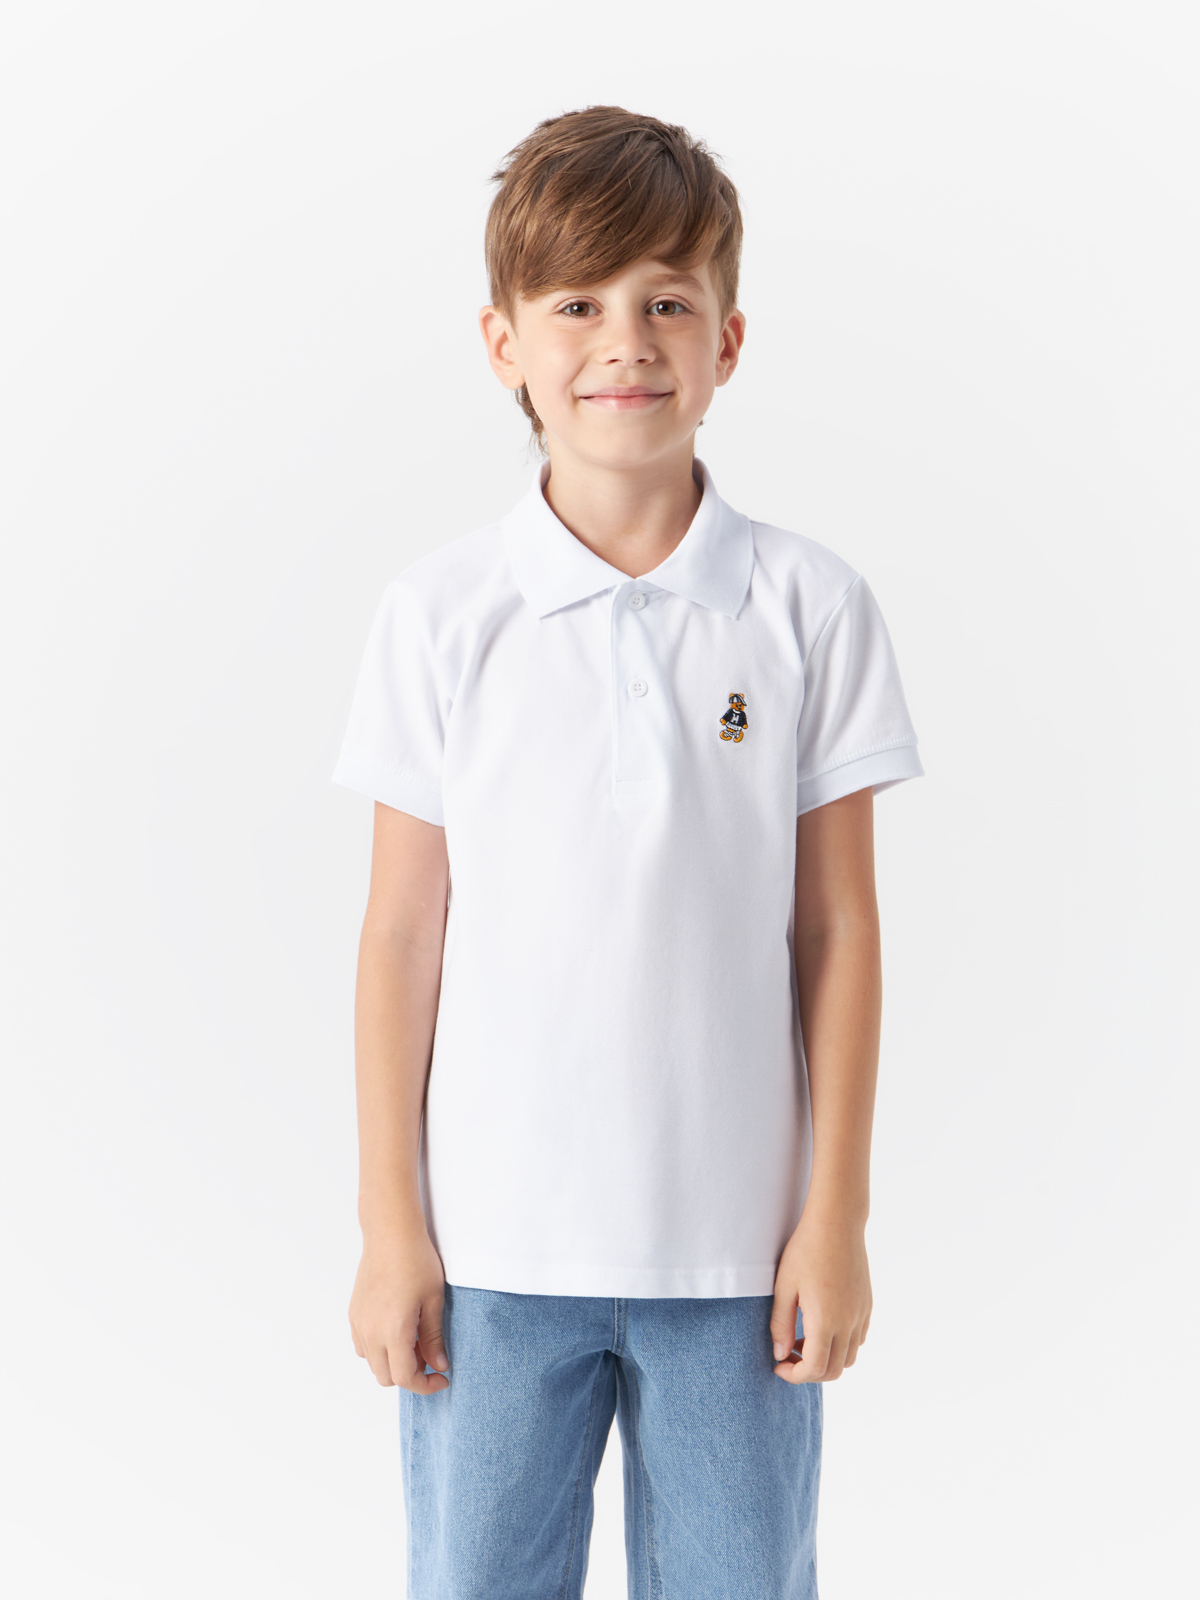 Рубашка-поло Yiwu Xflot Supply Chain детская, с коротким рукавом, BS-12, размер 140 см